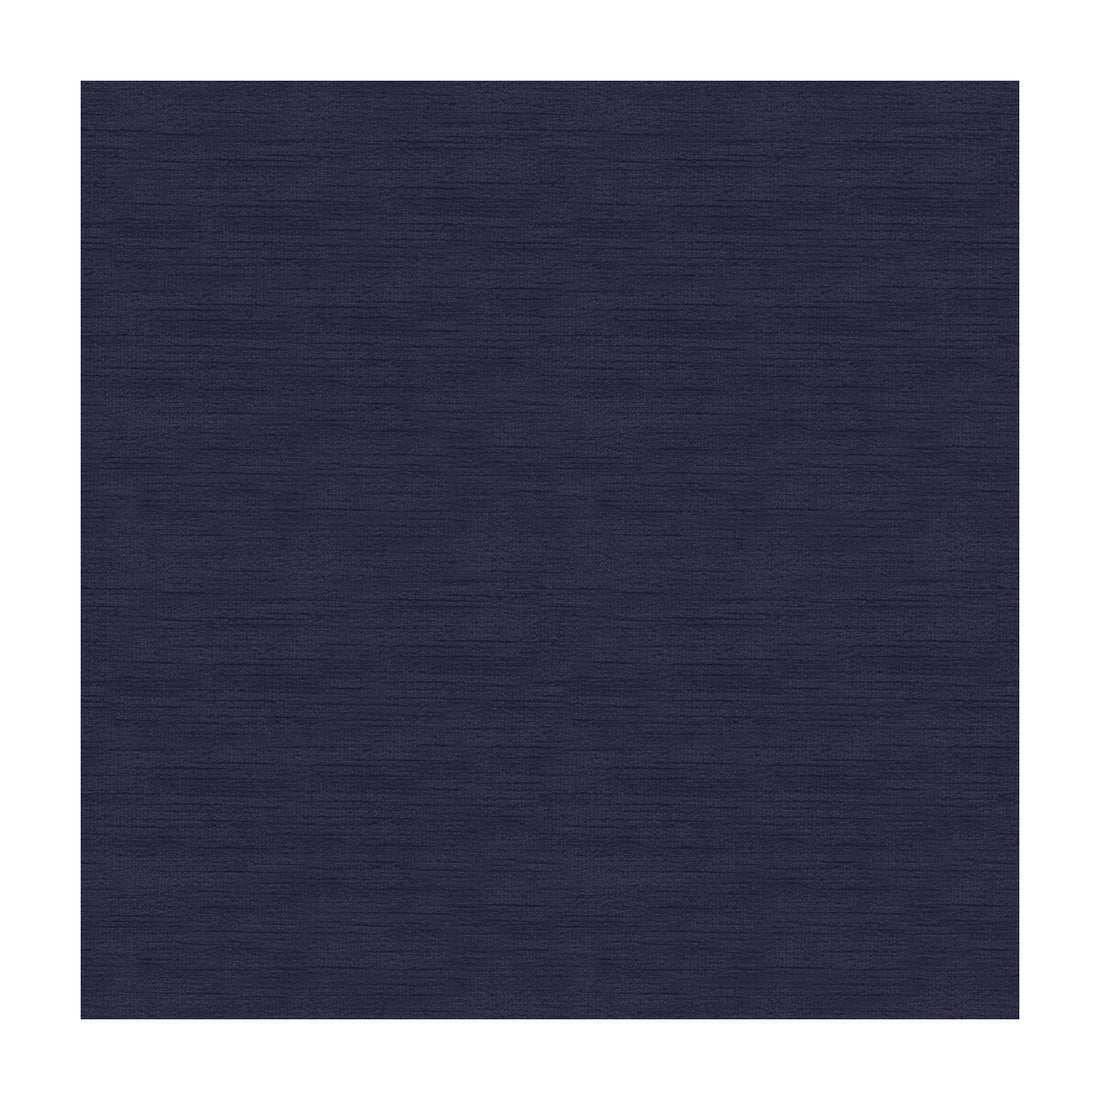 Kravet Design fabric in 11898-505 color - pattern 11898.505.0 - by Kravet Design